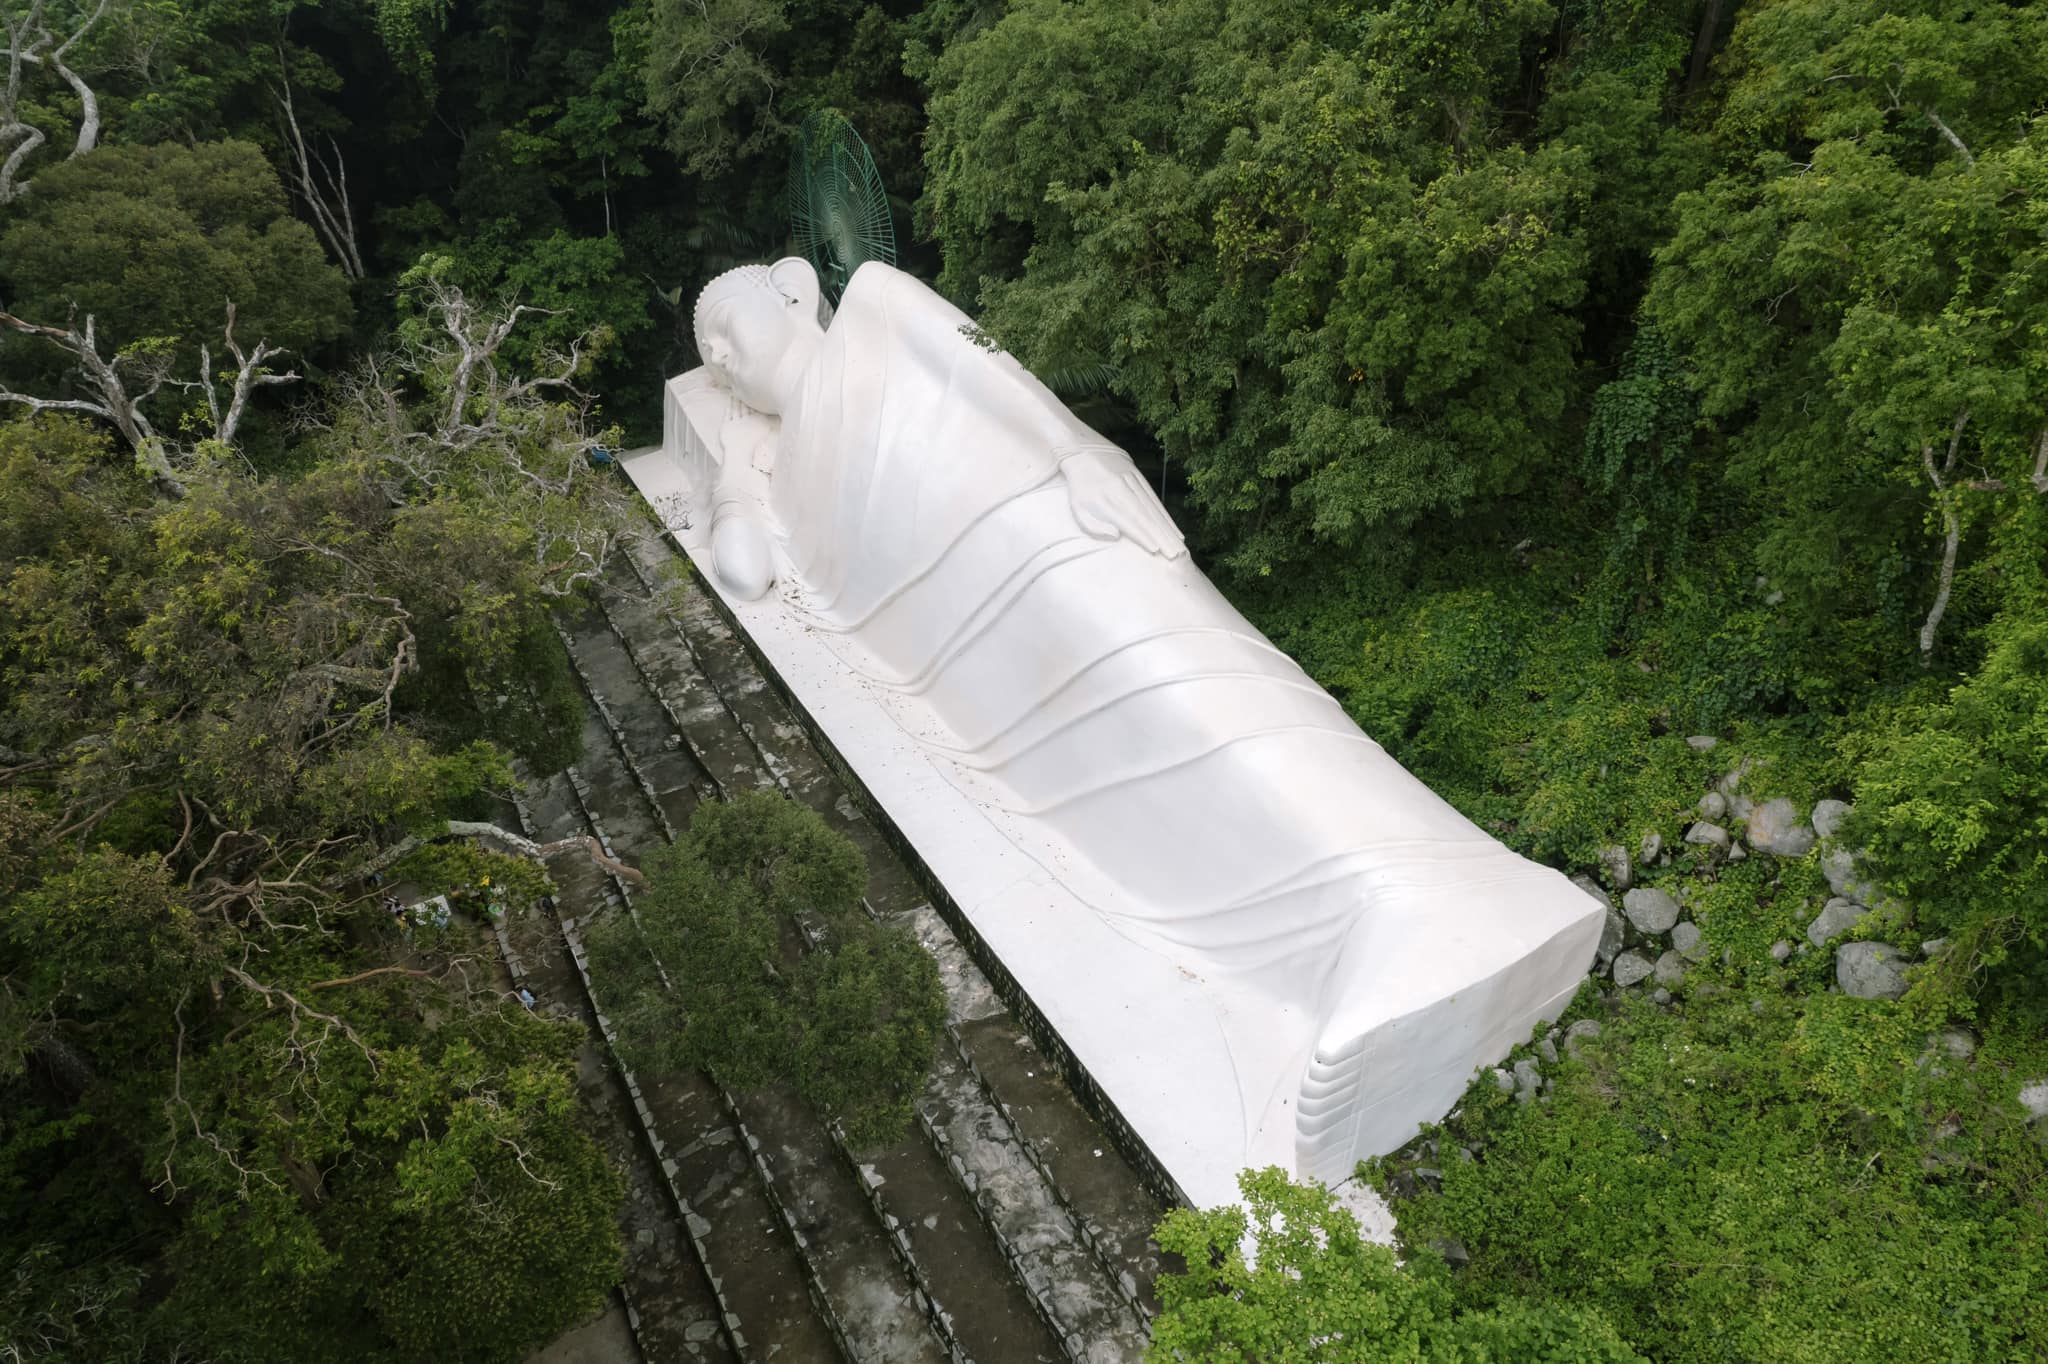 Núi Tà Cú có tượng Đức Phật Thích Ca nhập niết bàn dài 49 m, là tượng Phật nằm dài đạt kỷ lục châu Á.